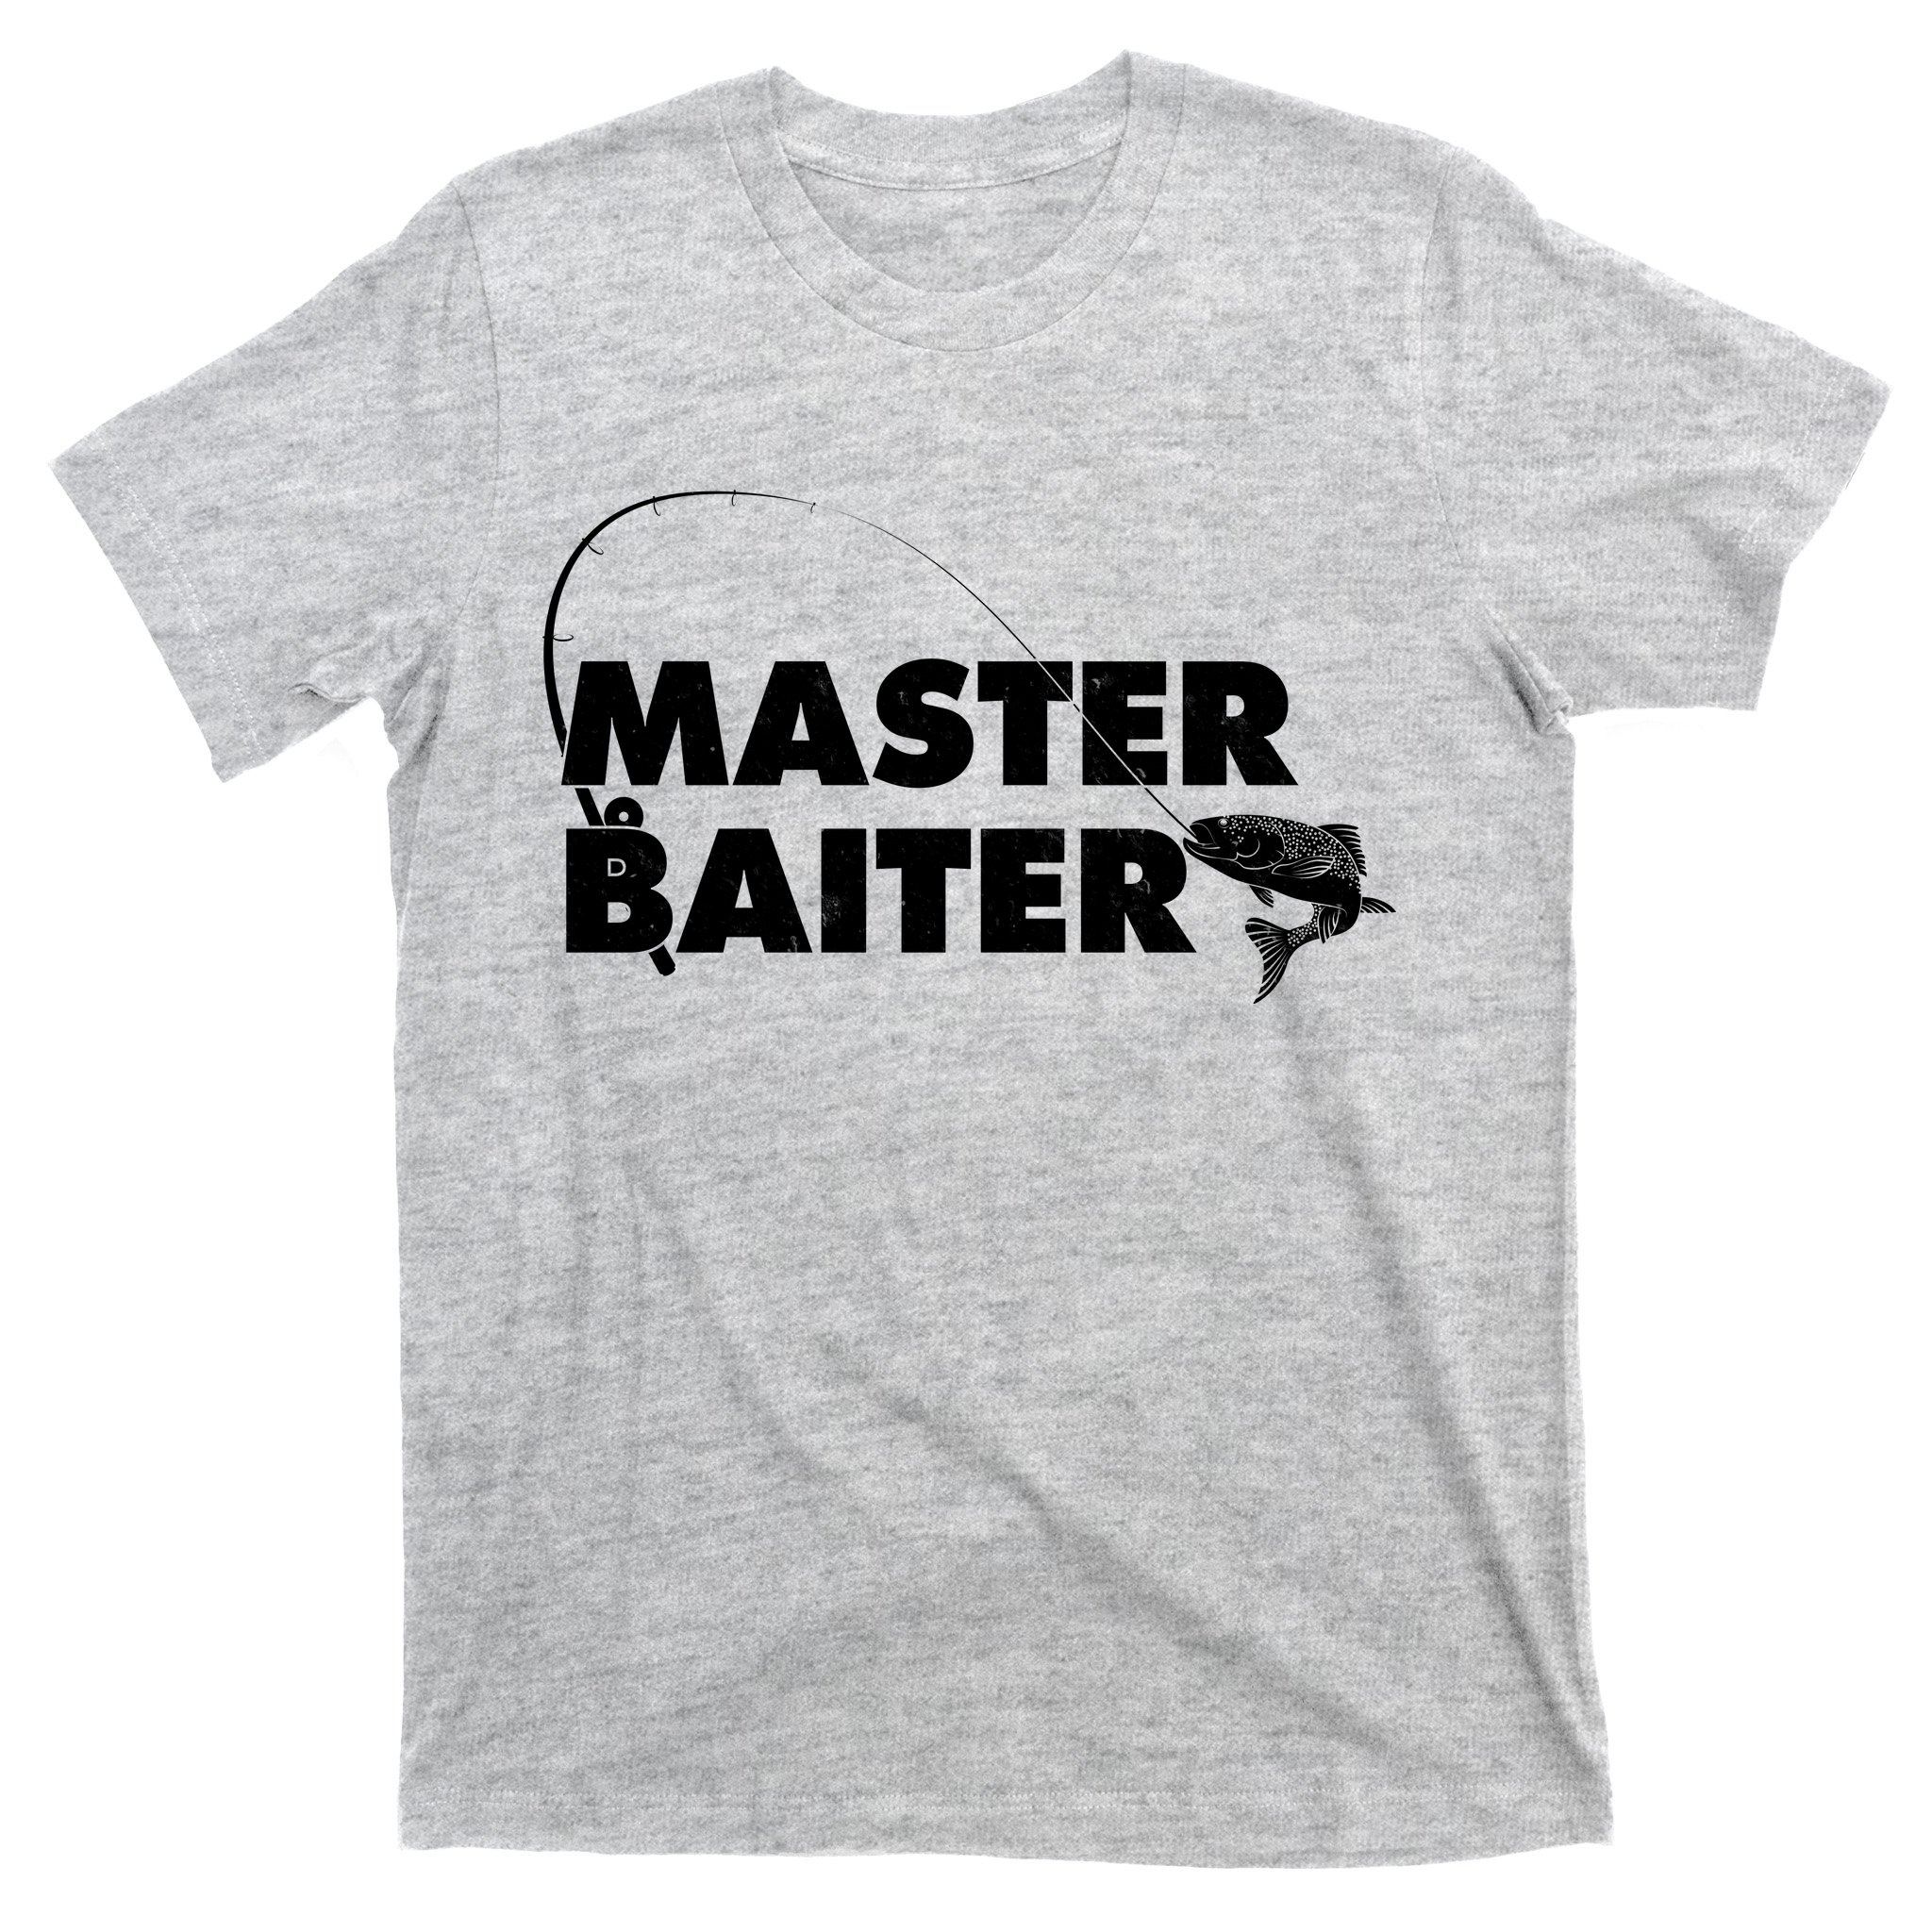 Funny Fishing Master Baiter T-Shirt